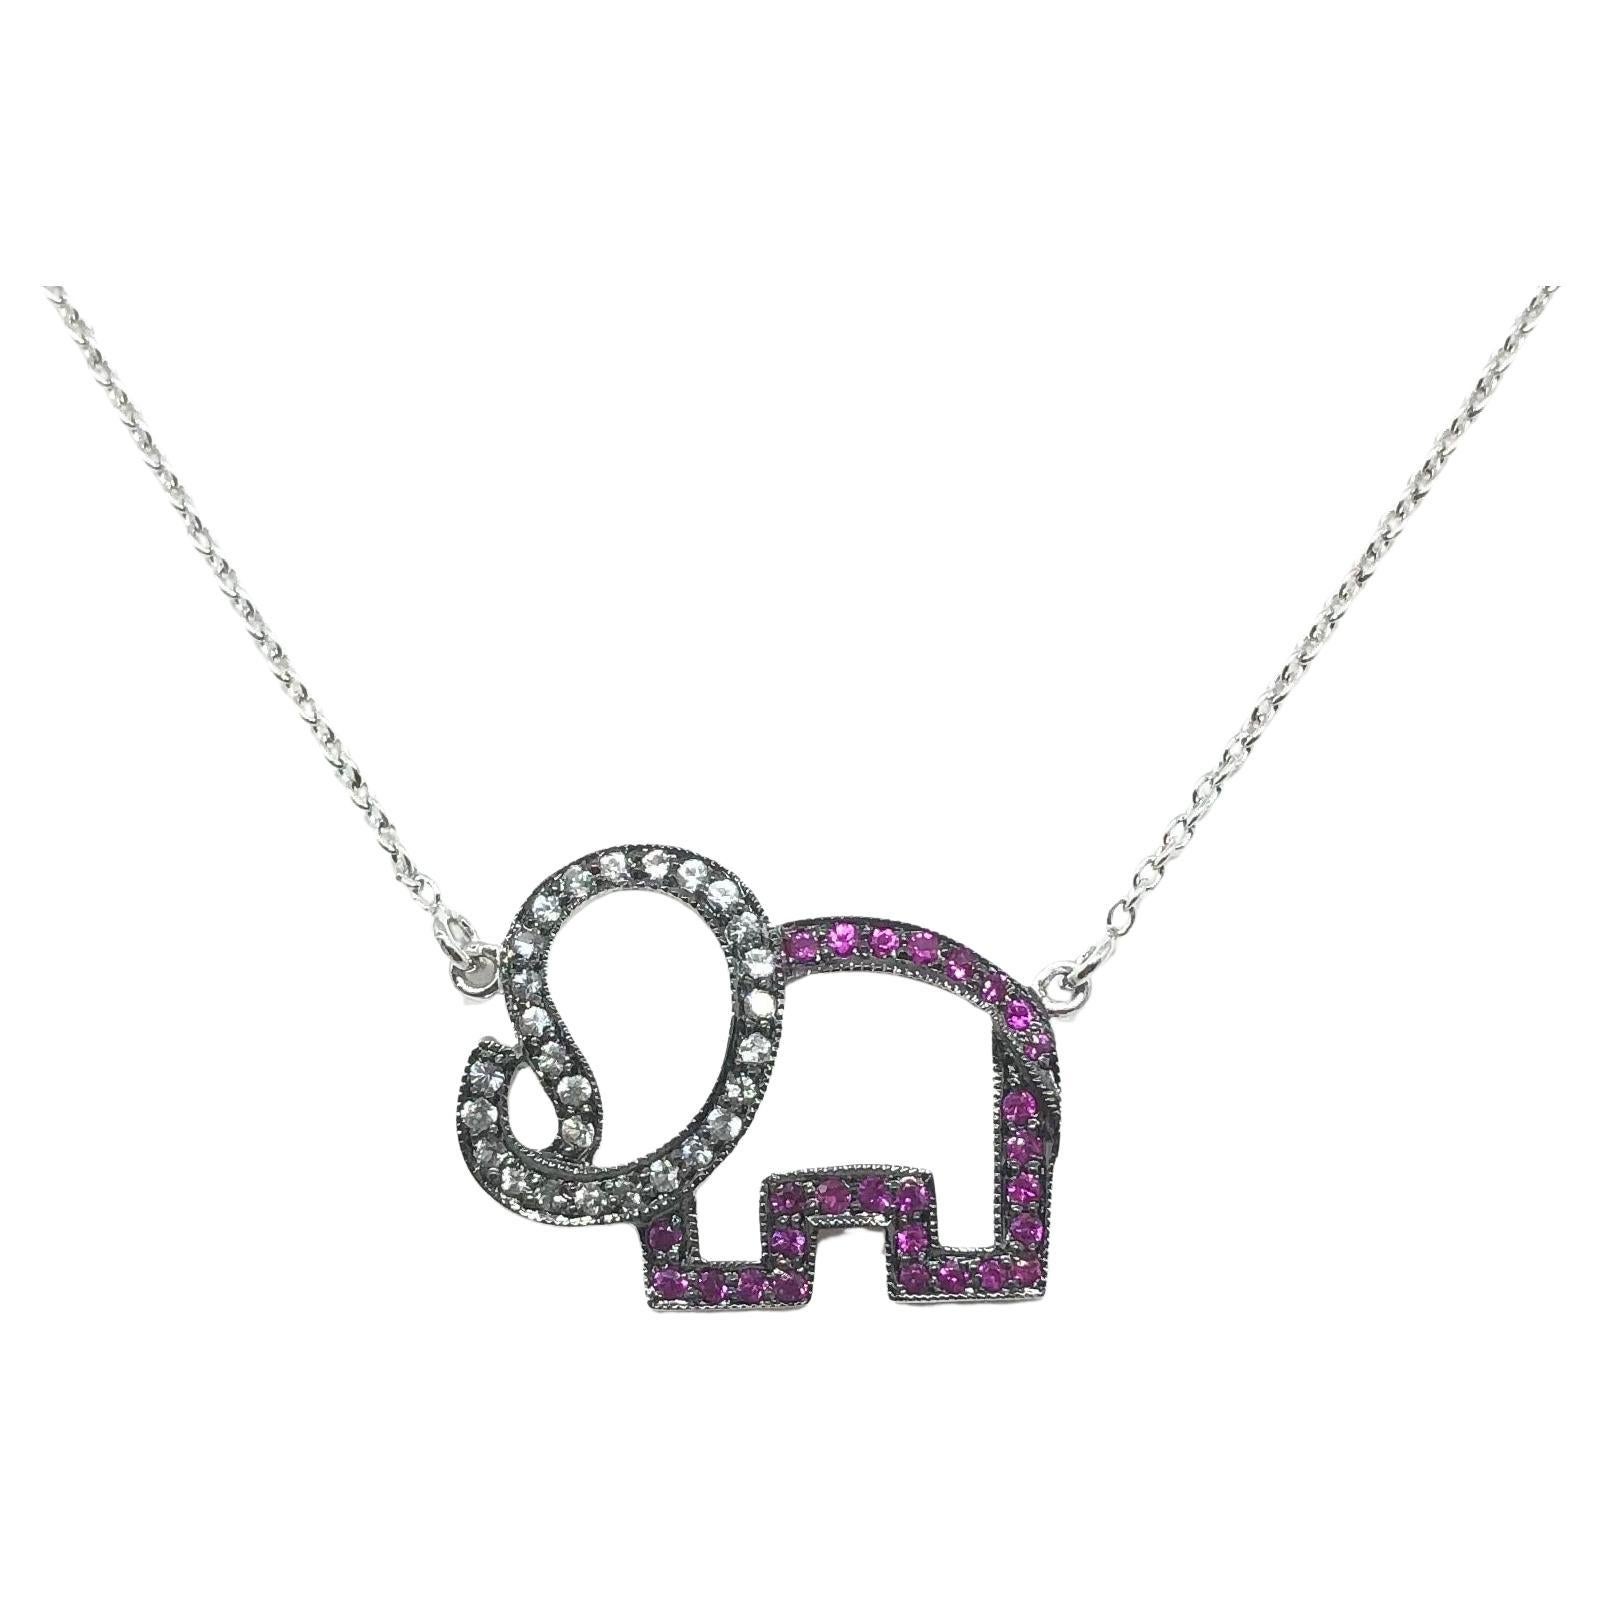 Elefanten-Halskette mit rosa Saphiren und weißen Saphiren in Silberfassung